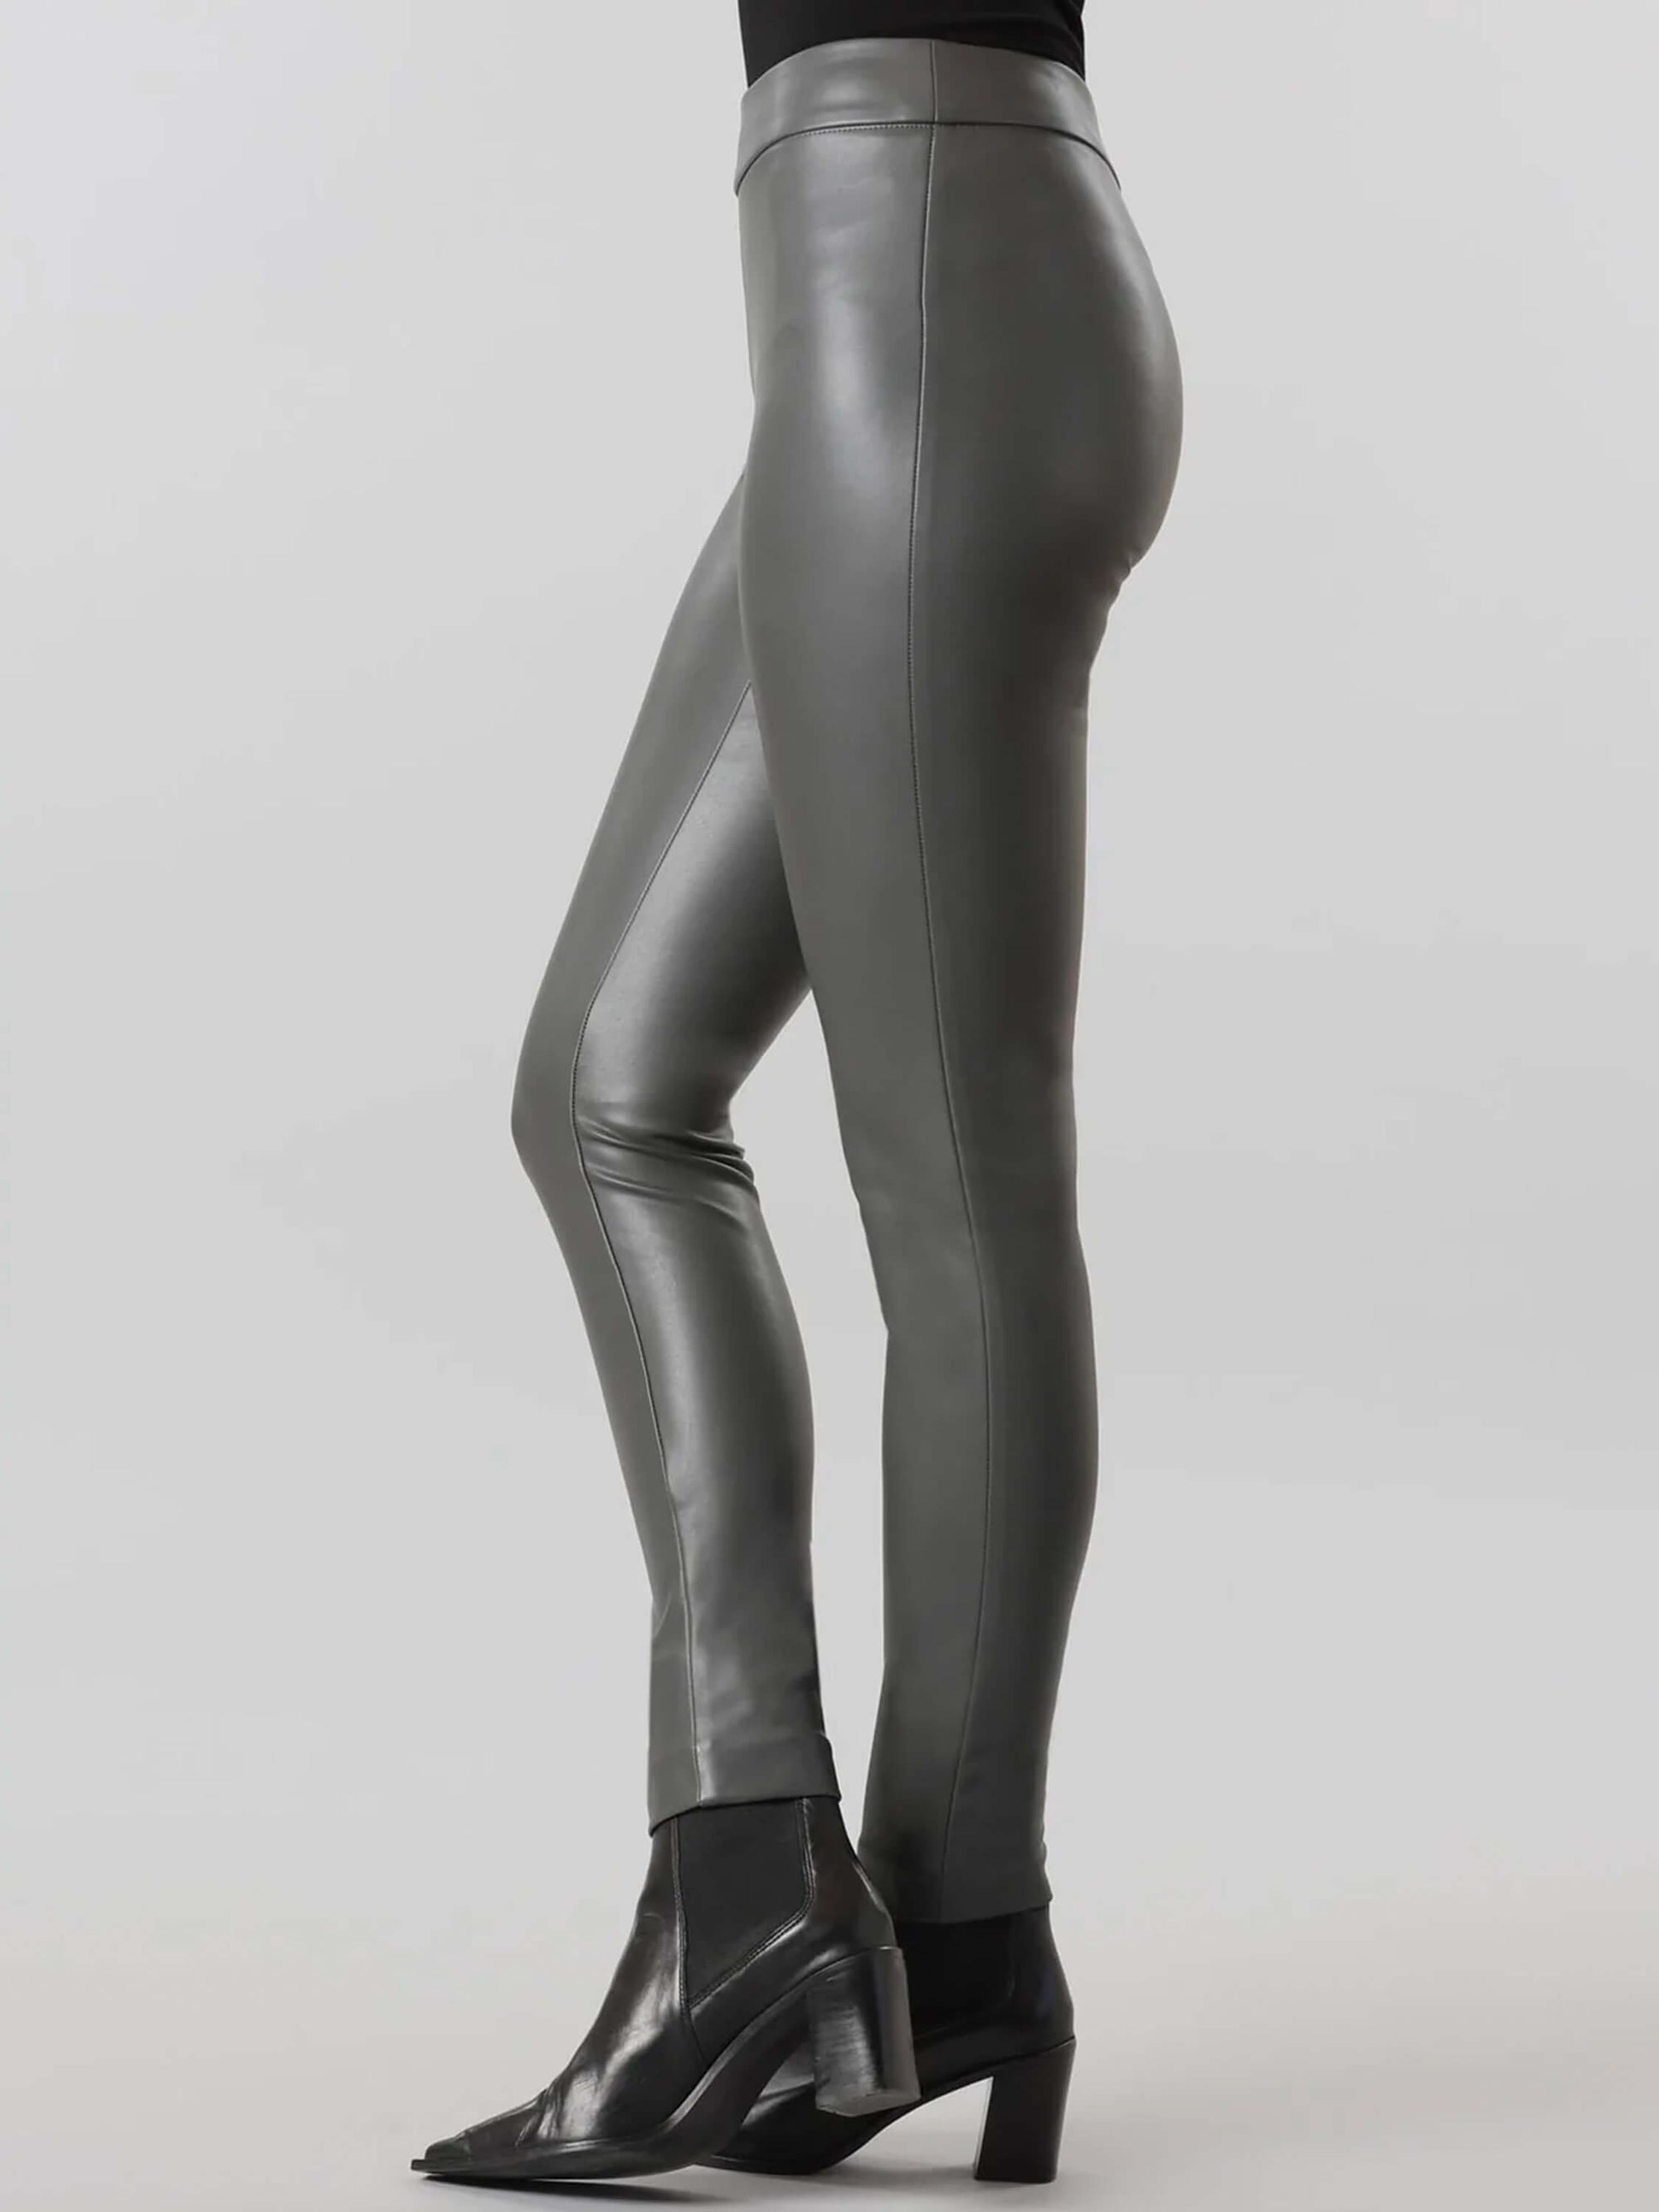 Lisette – Verona Vegan Leather Thinny Pant